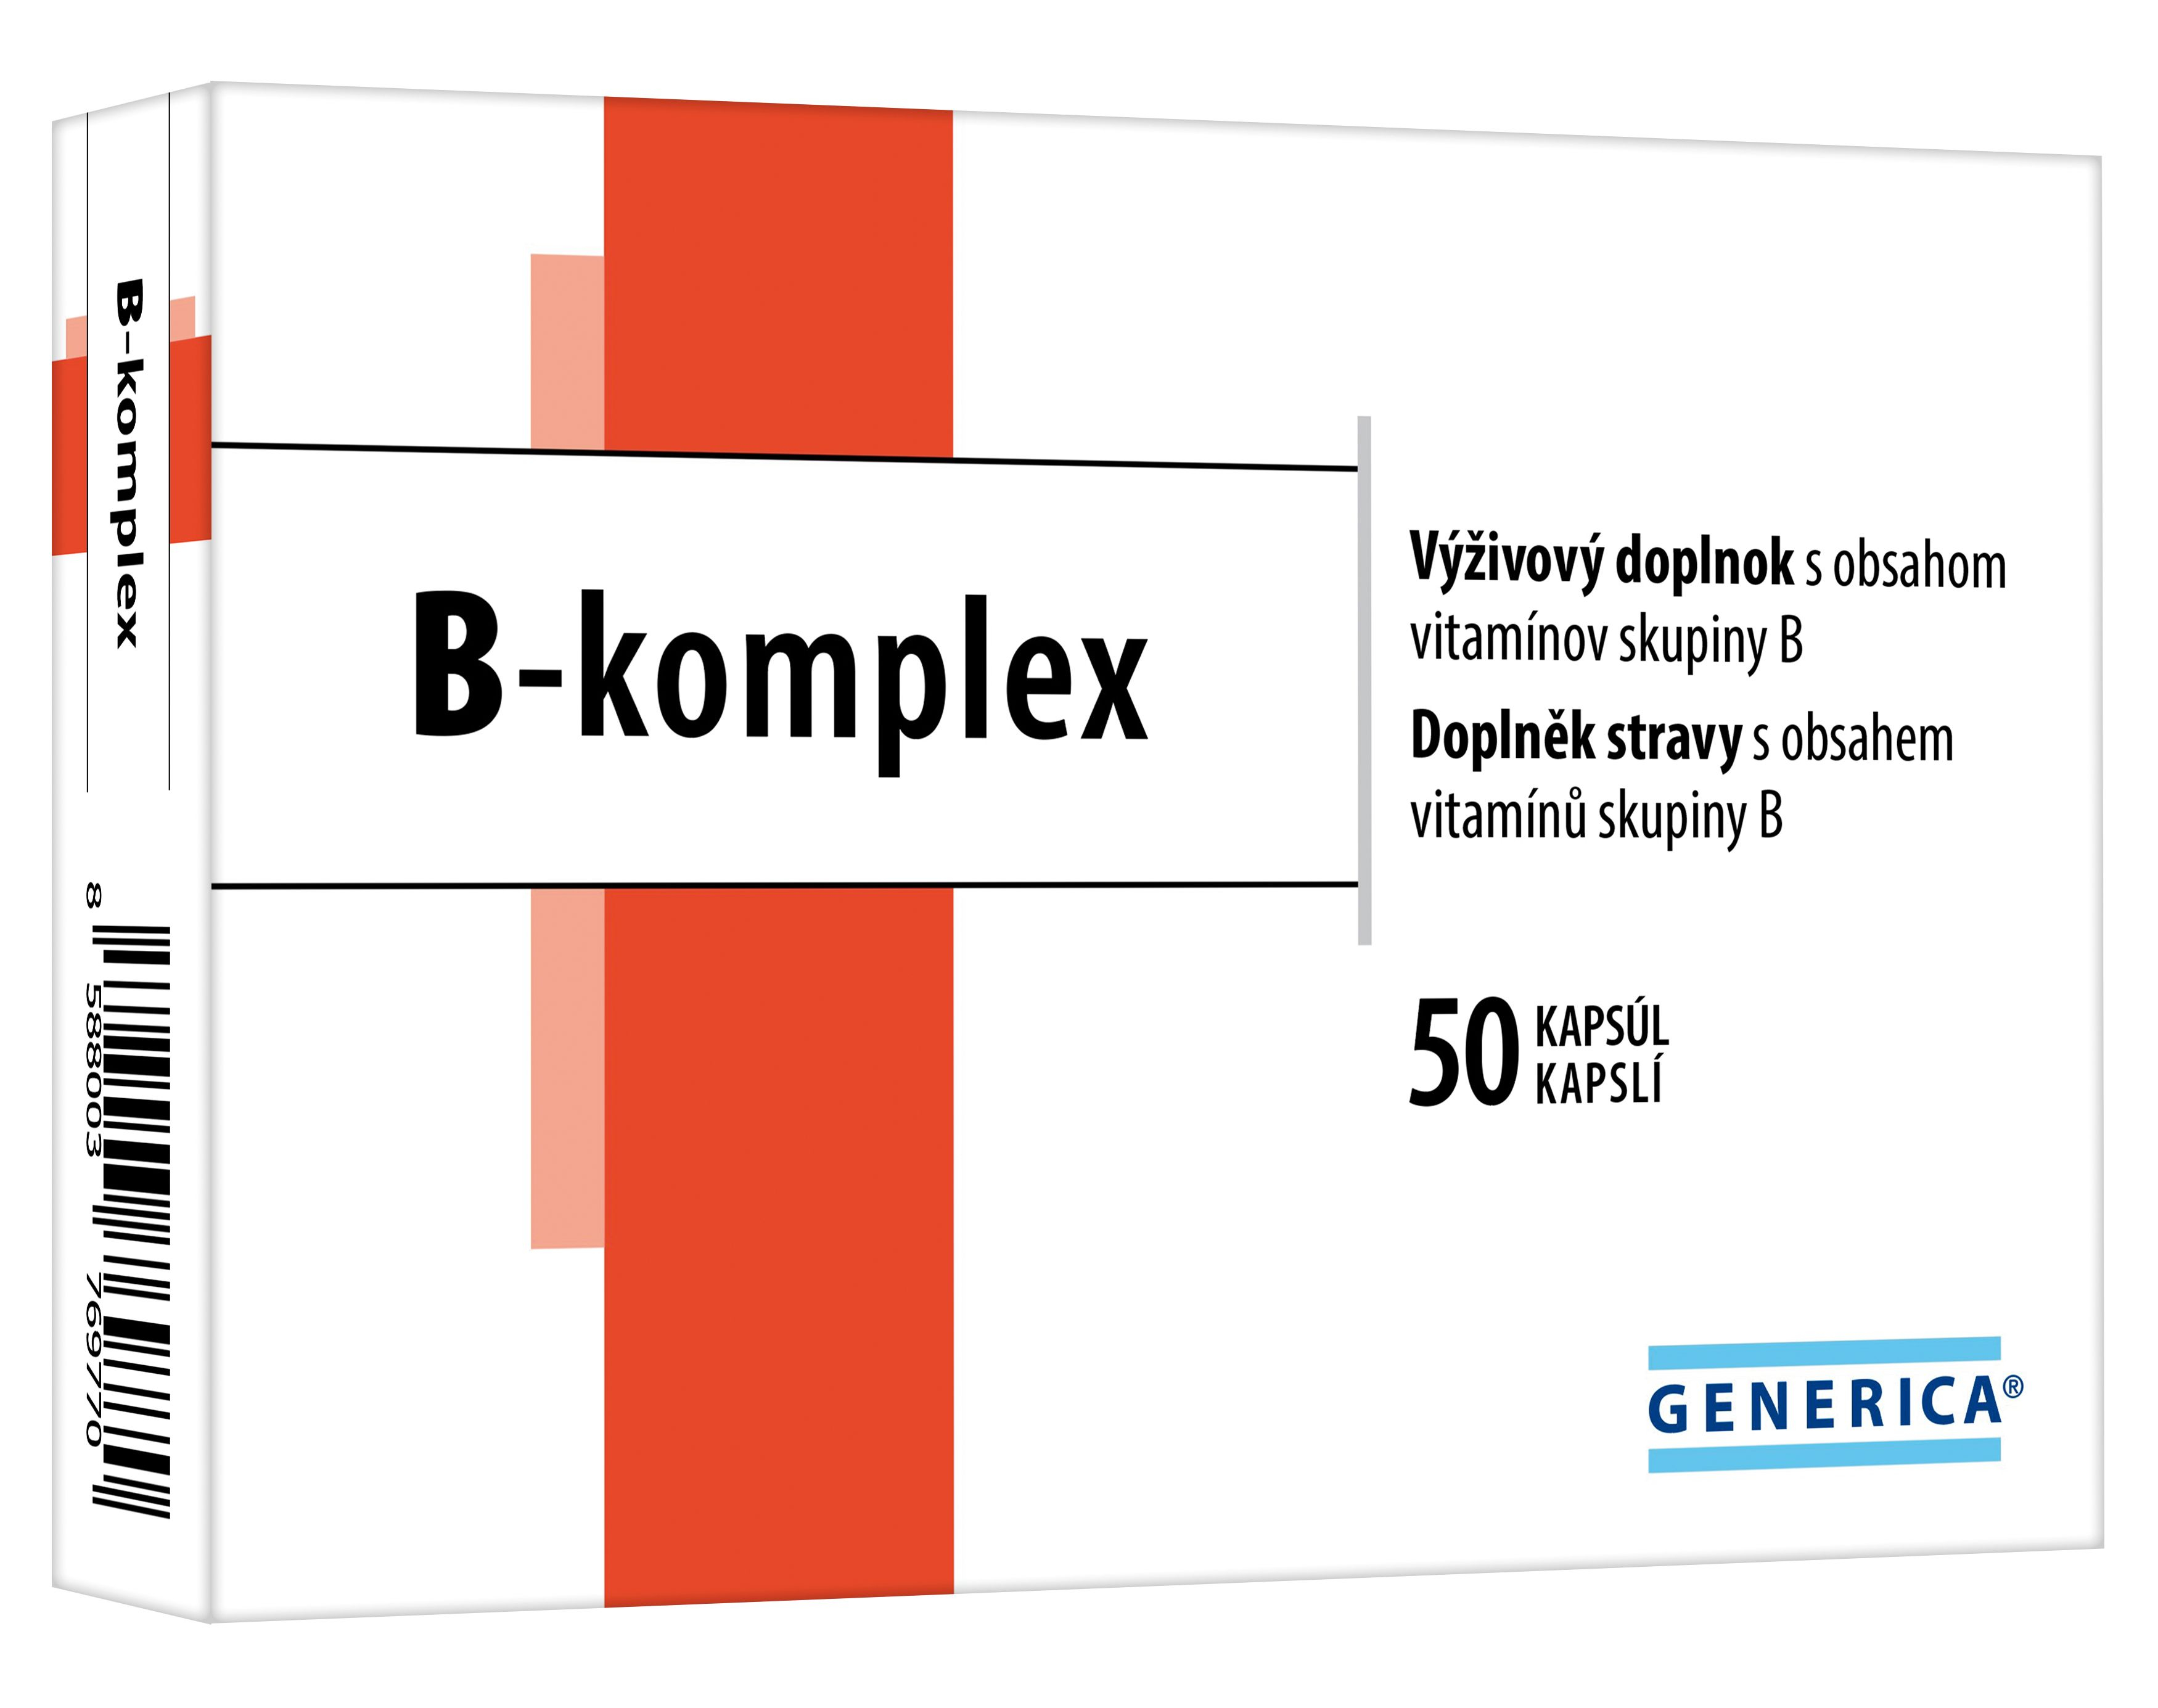 Generica B-komplex 50 kapslí Generica